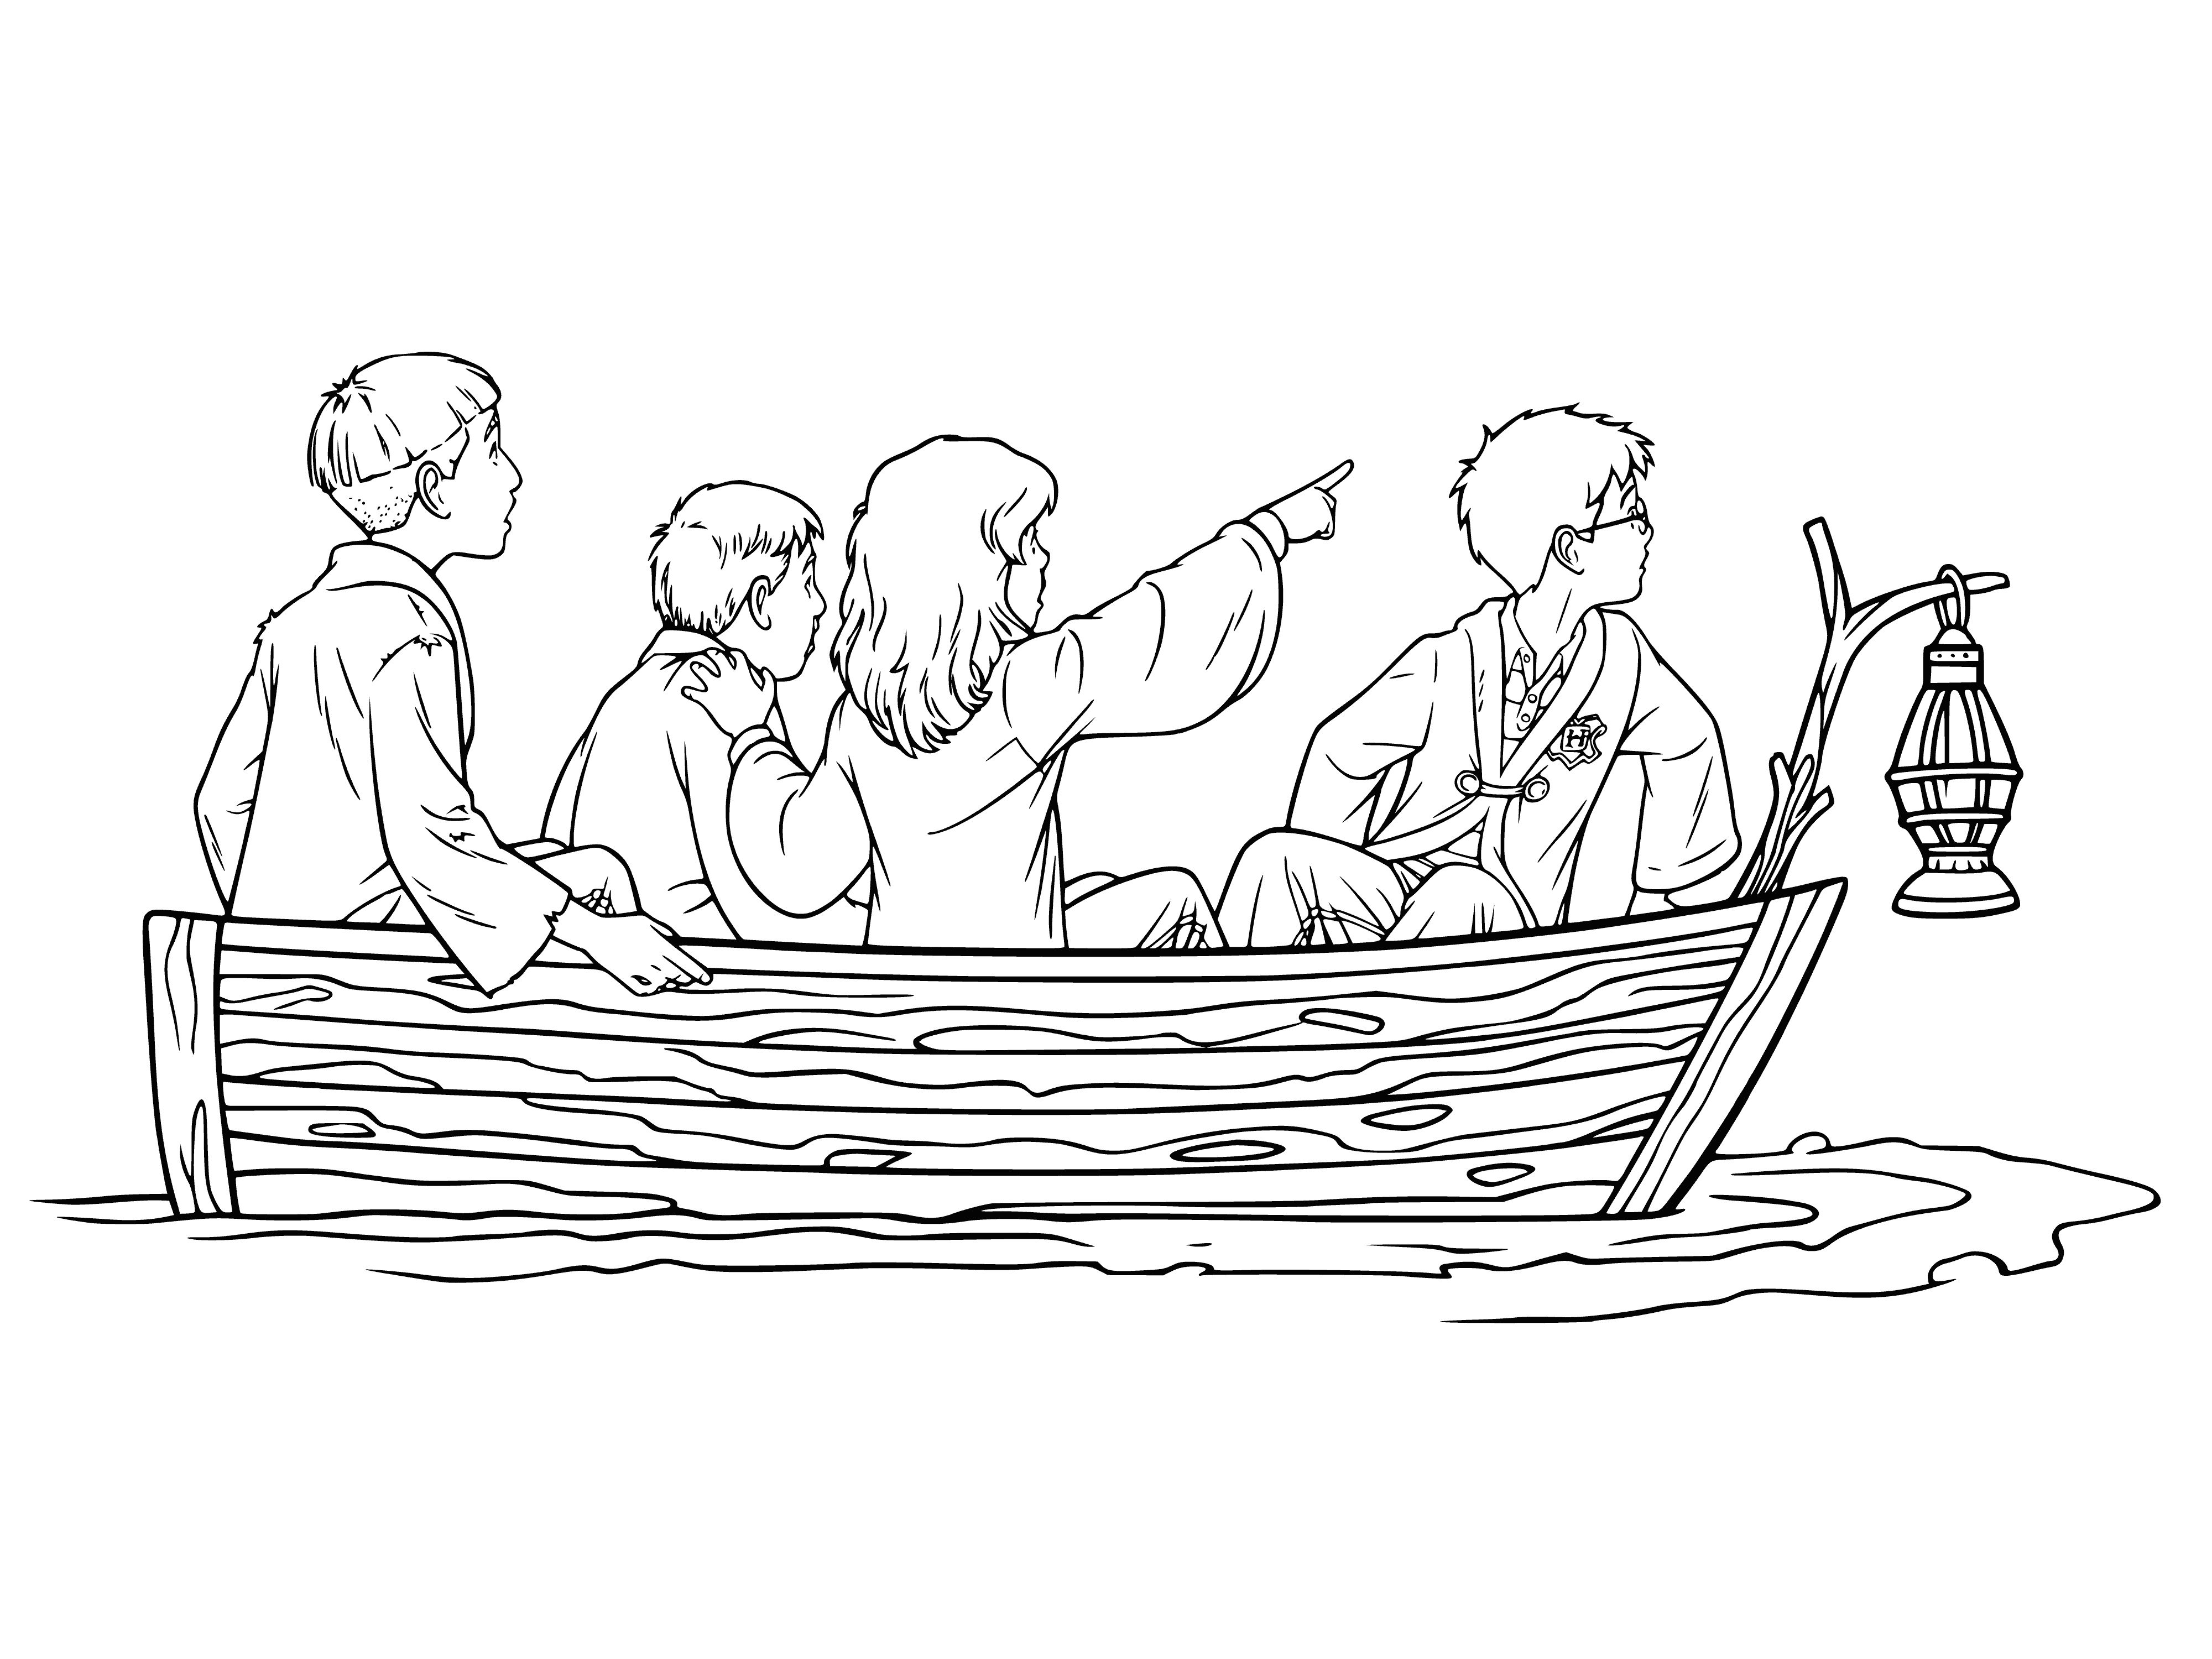 Kinders in die boot inkleurbladsy